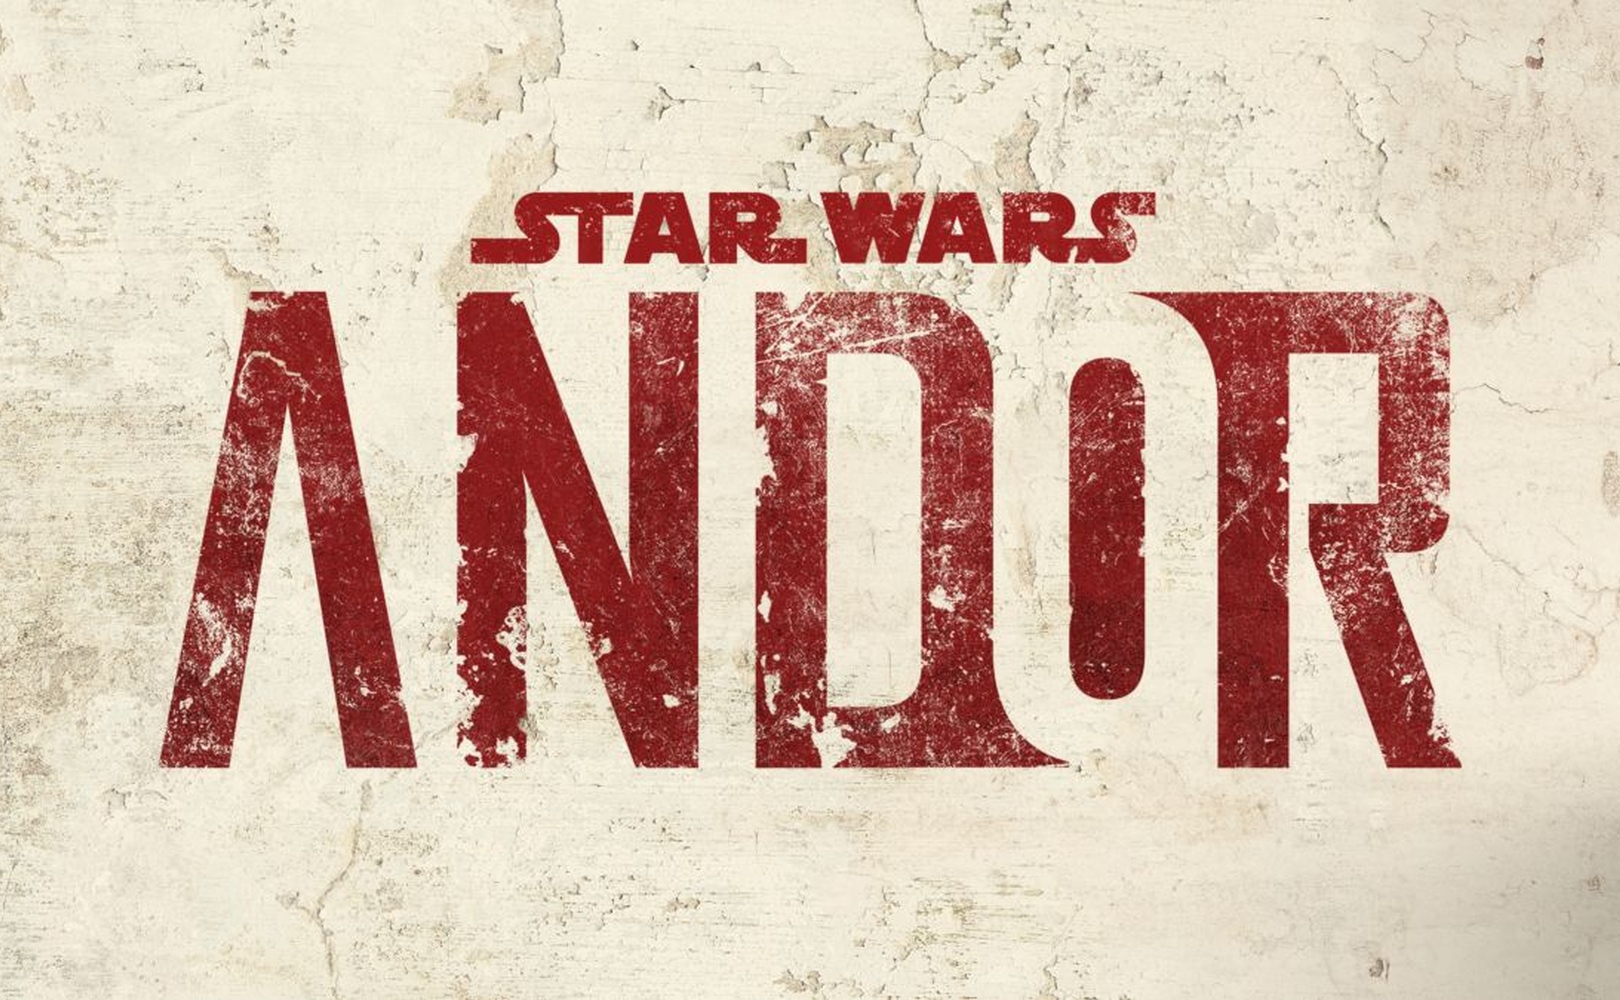 “Star Wars: Andor” – wszystko o serialu z Diego Luną. Trailer, fabuła, data premiery